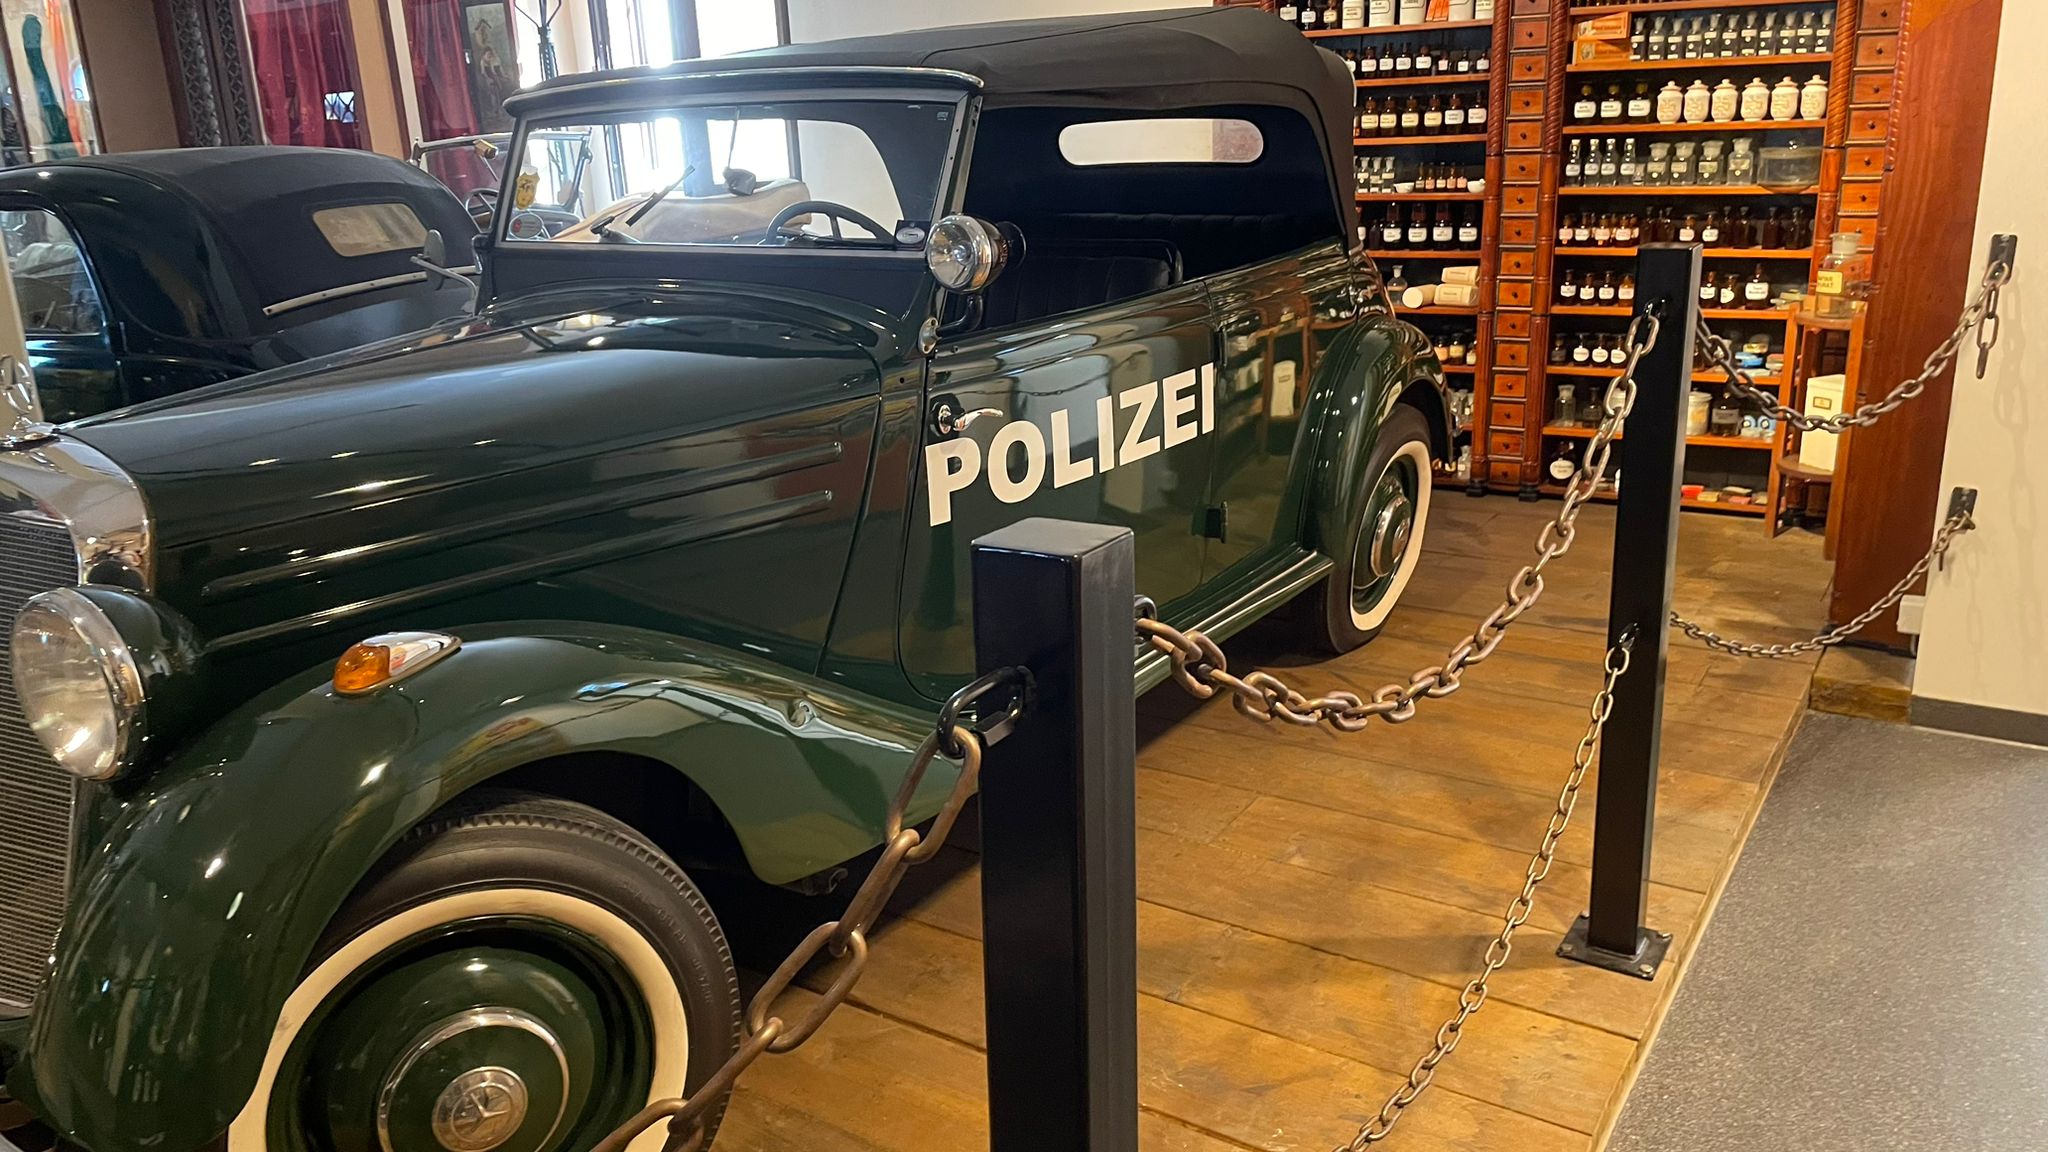 Mercedes Polizeifahrzeug